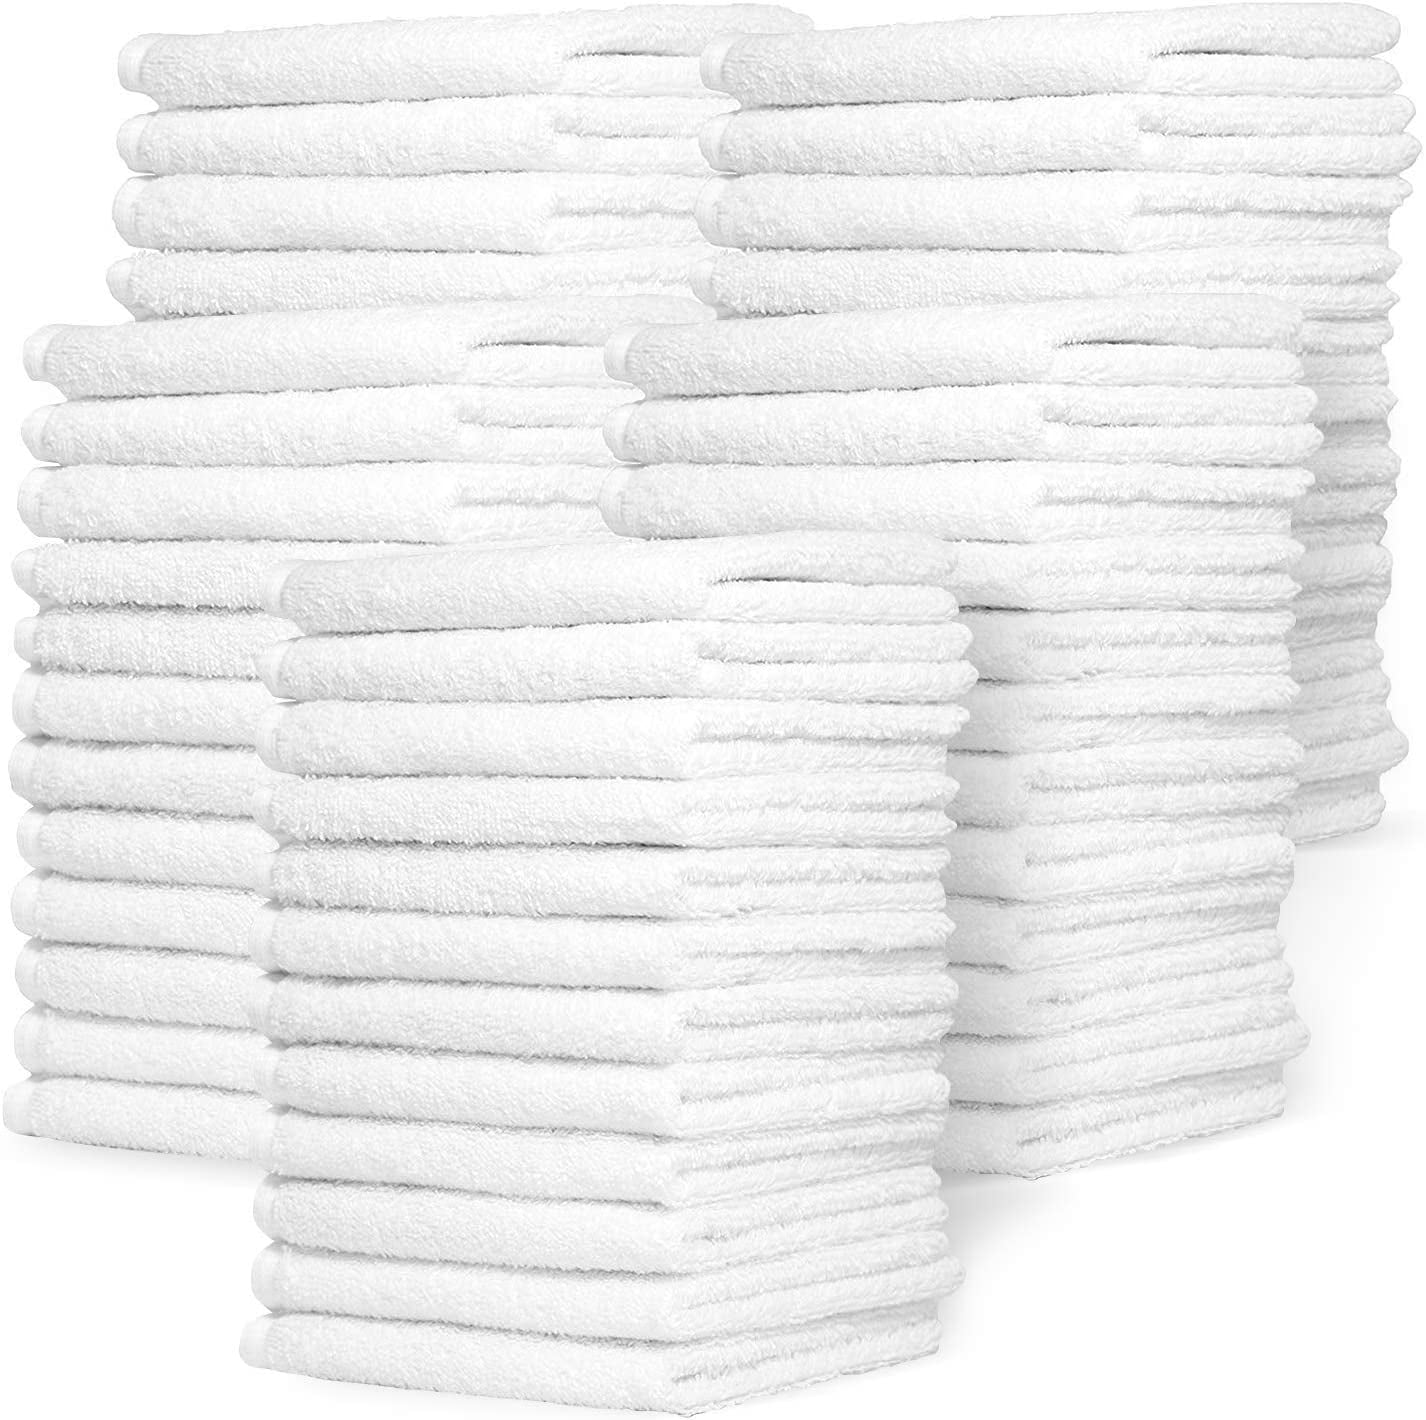 Washcloths Bath Face Body 12x12 100% Cotton Clean Bathroom NEW! 12 pc 